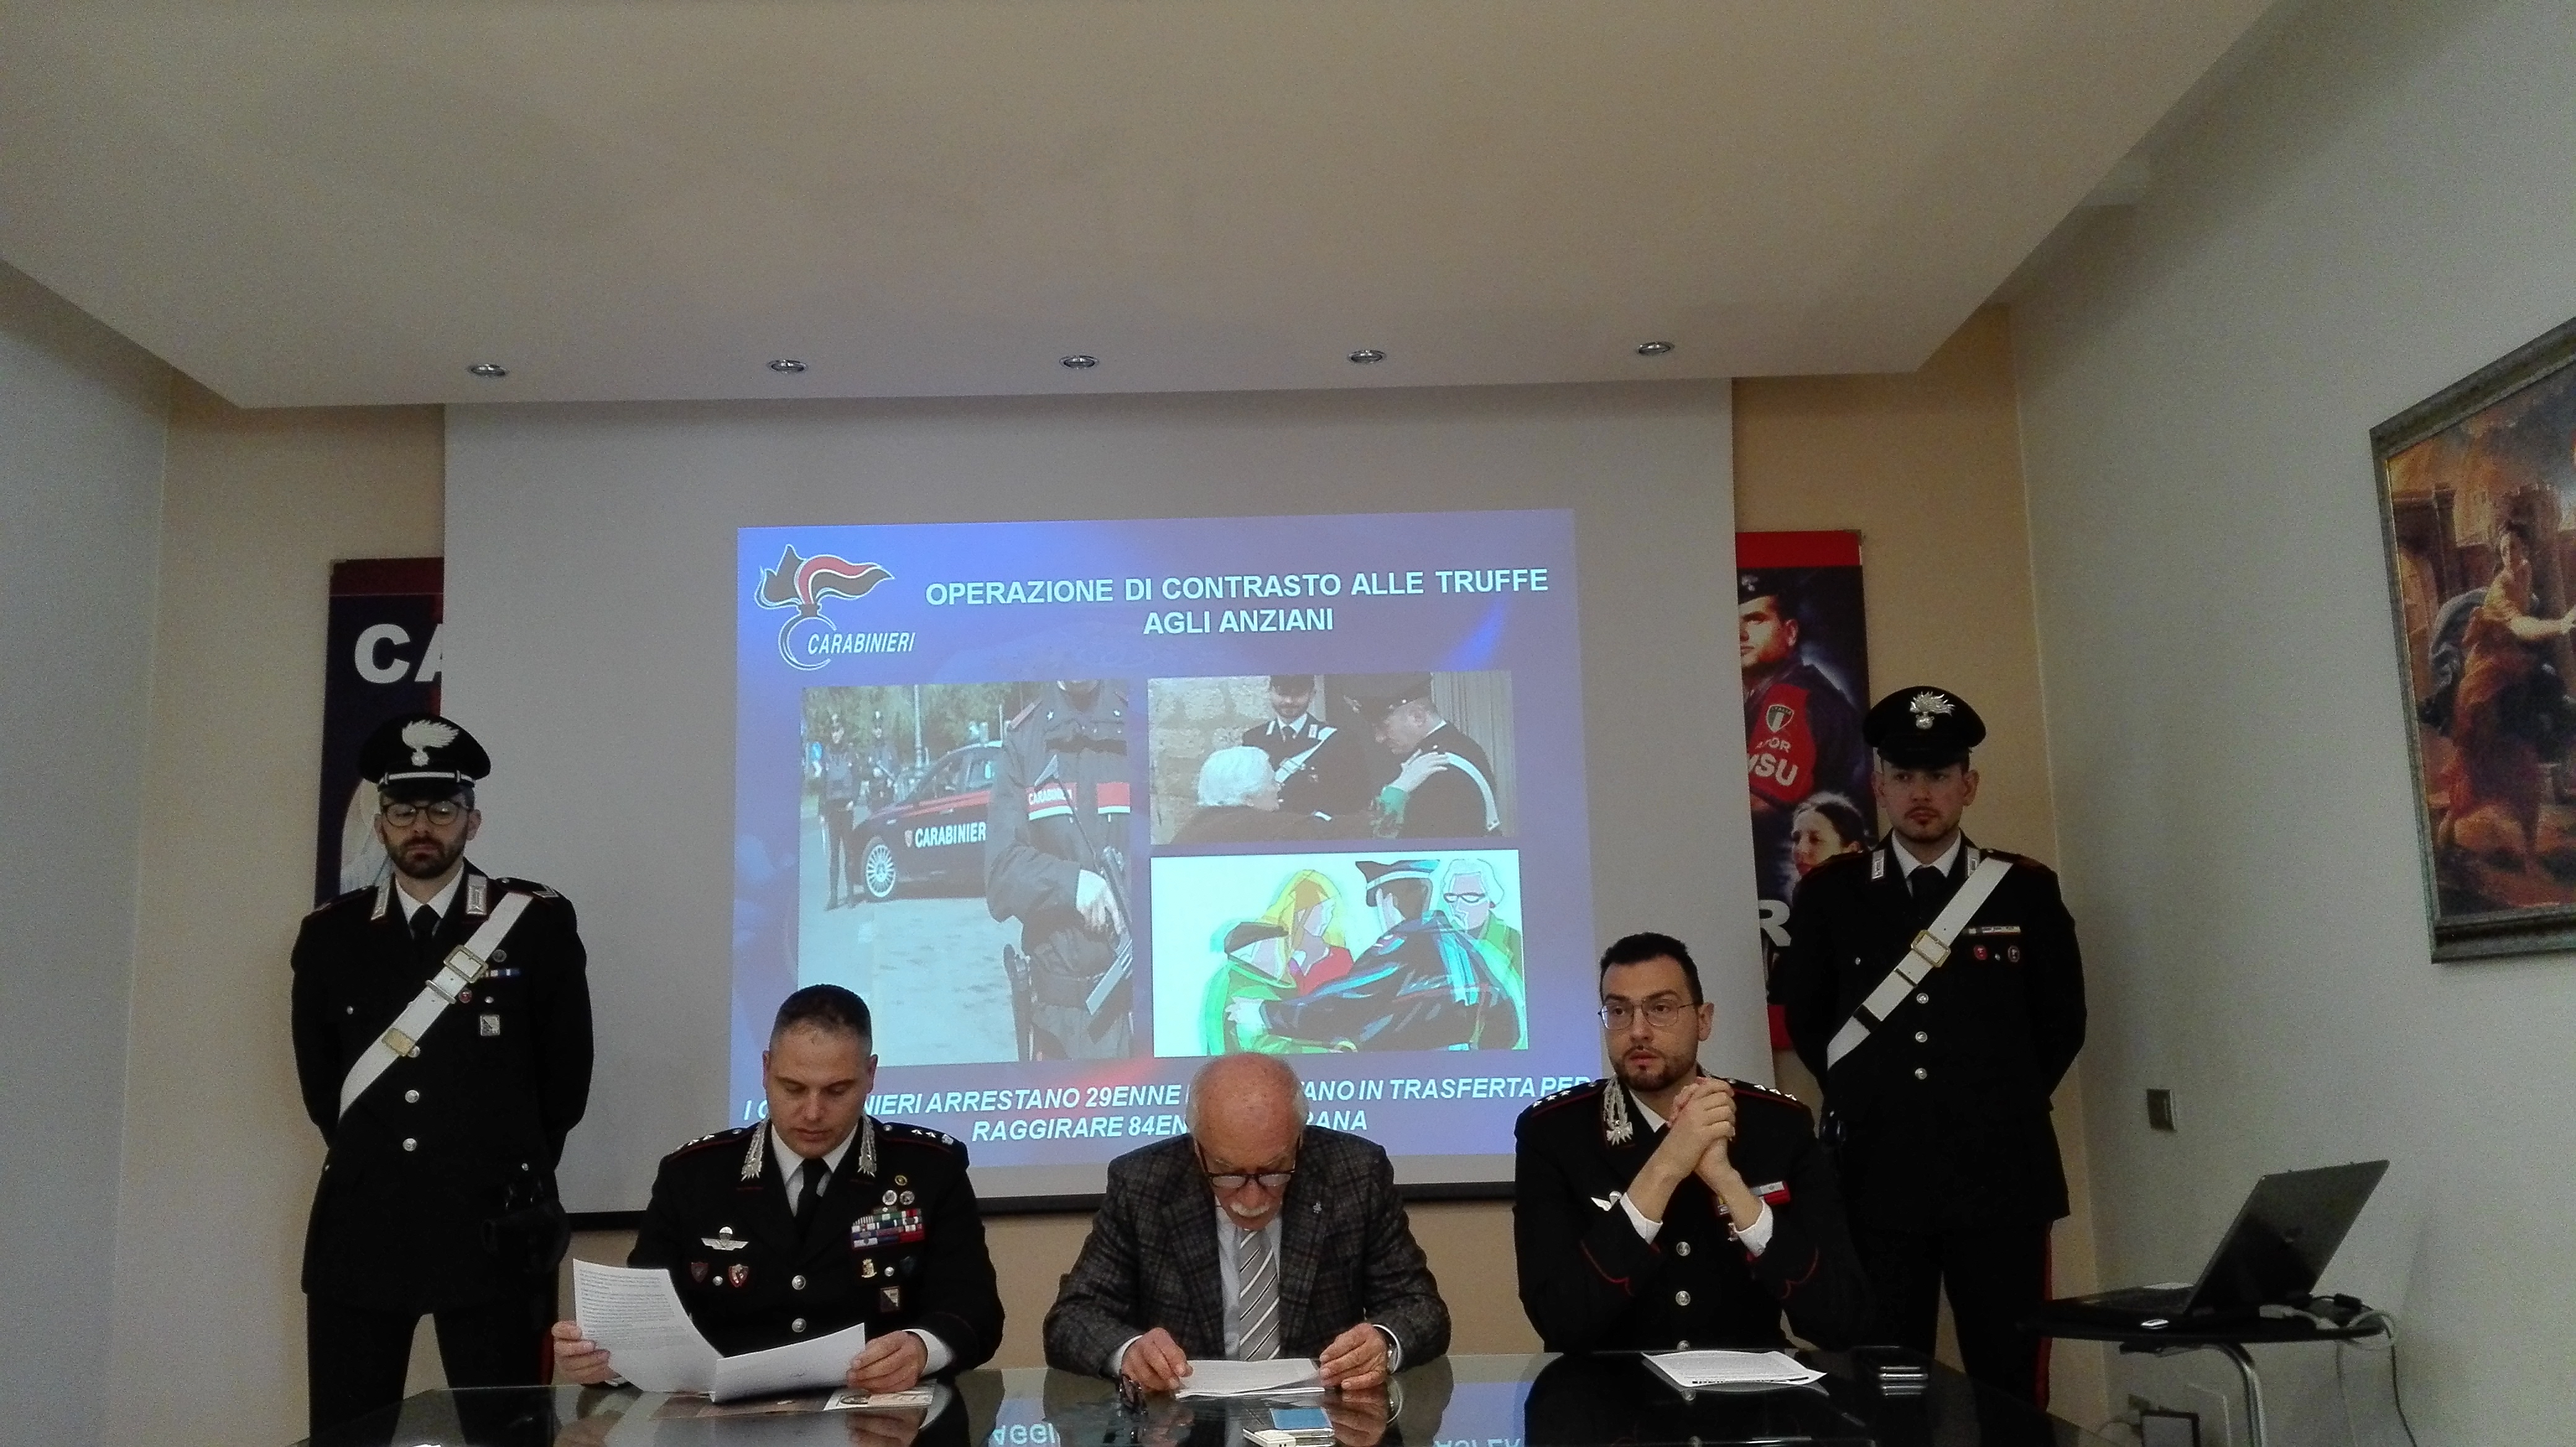 Ecco l’identikit dei professionisti delle truffe. Un 29enne di Scampia arrestato dai Carabinieri, la vittima è una 84enne di Matera